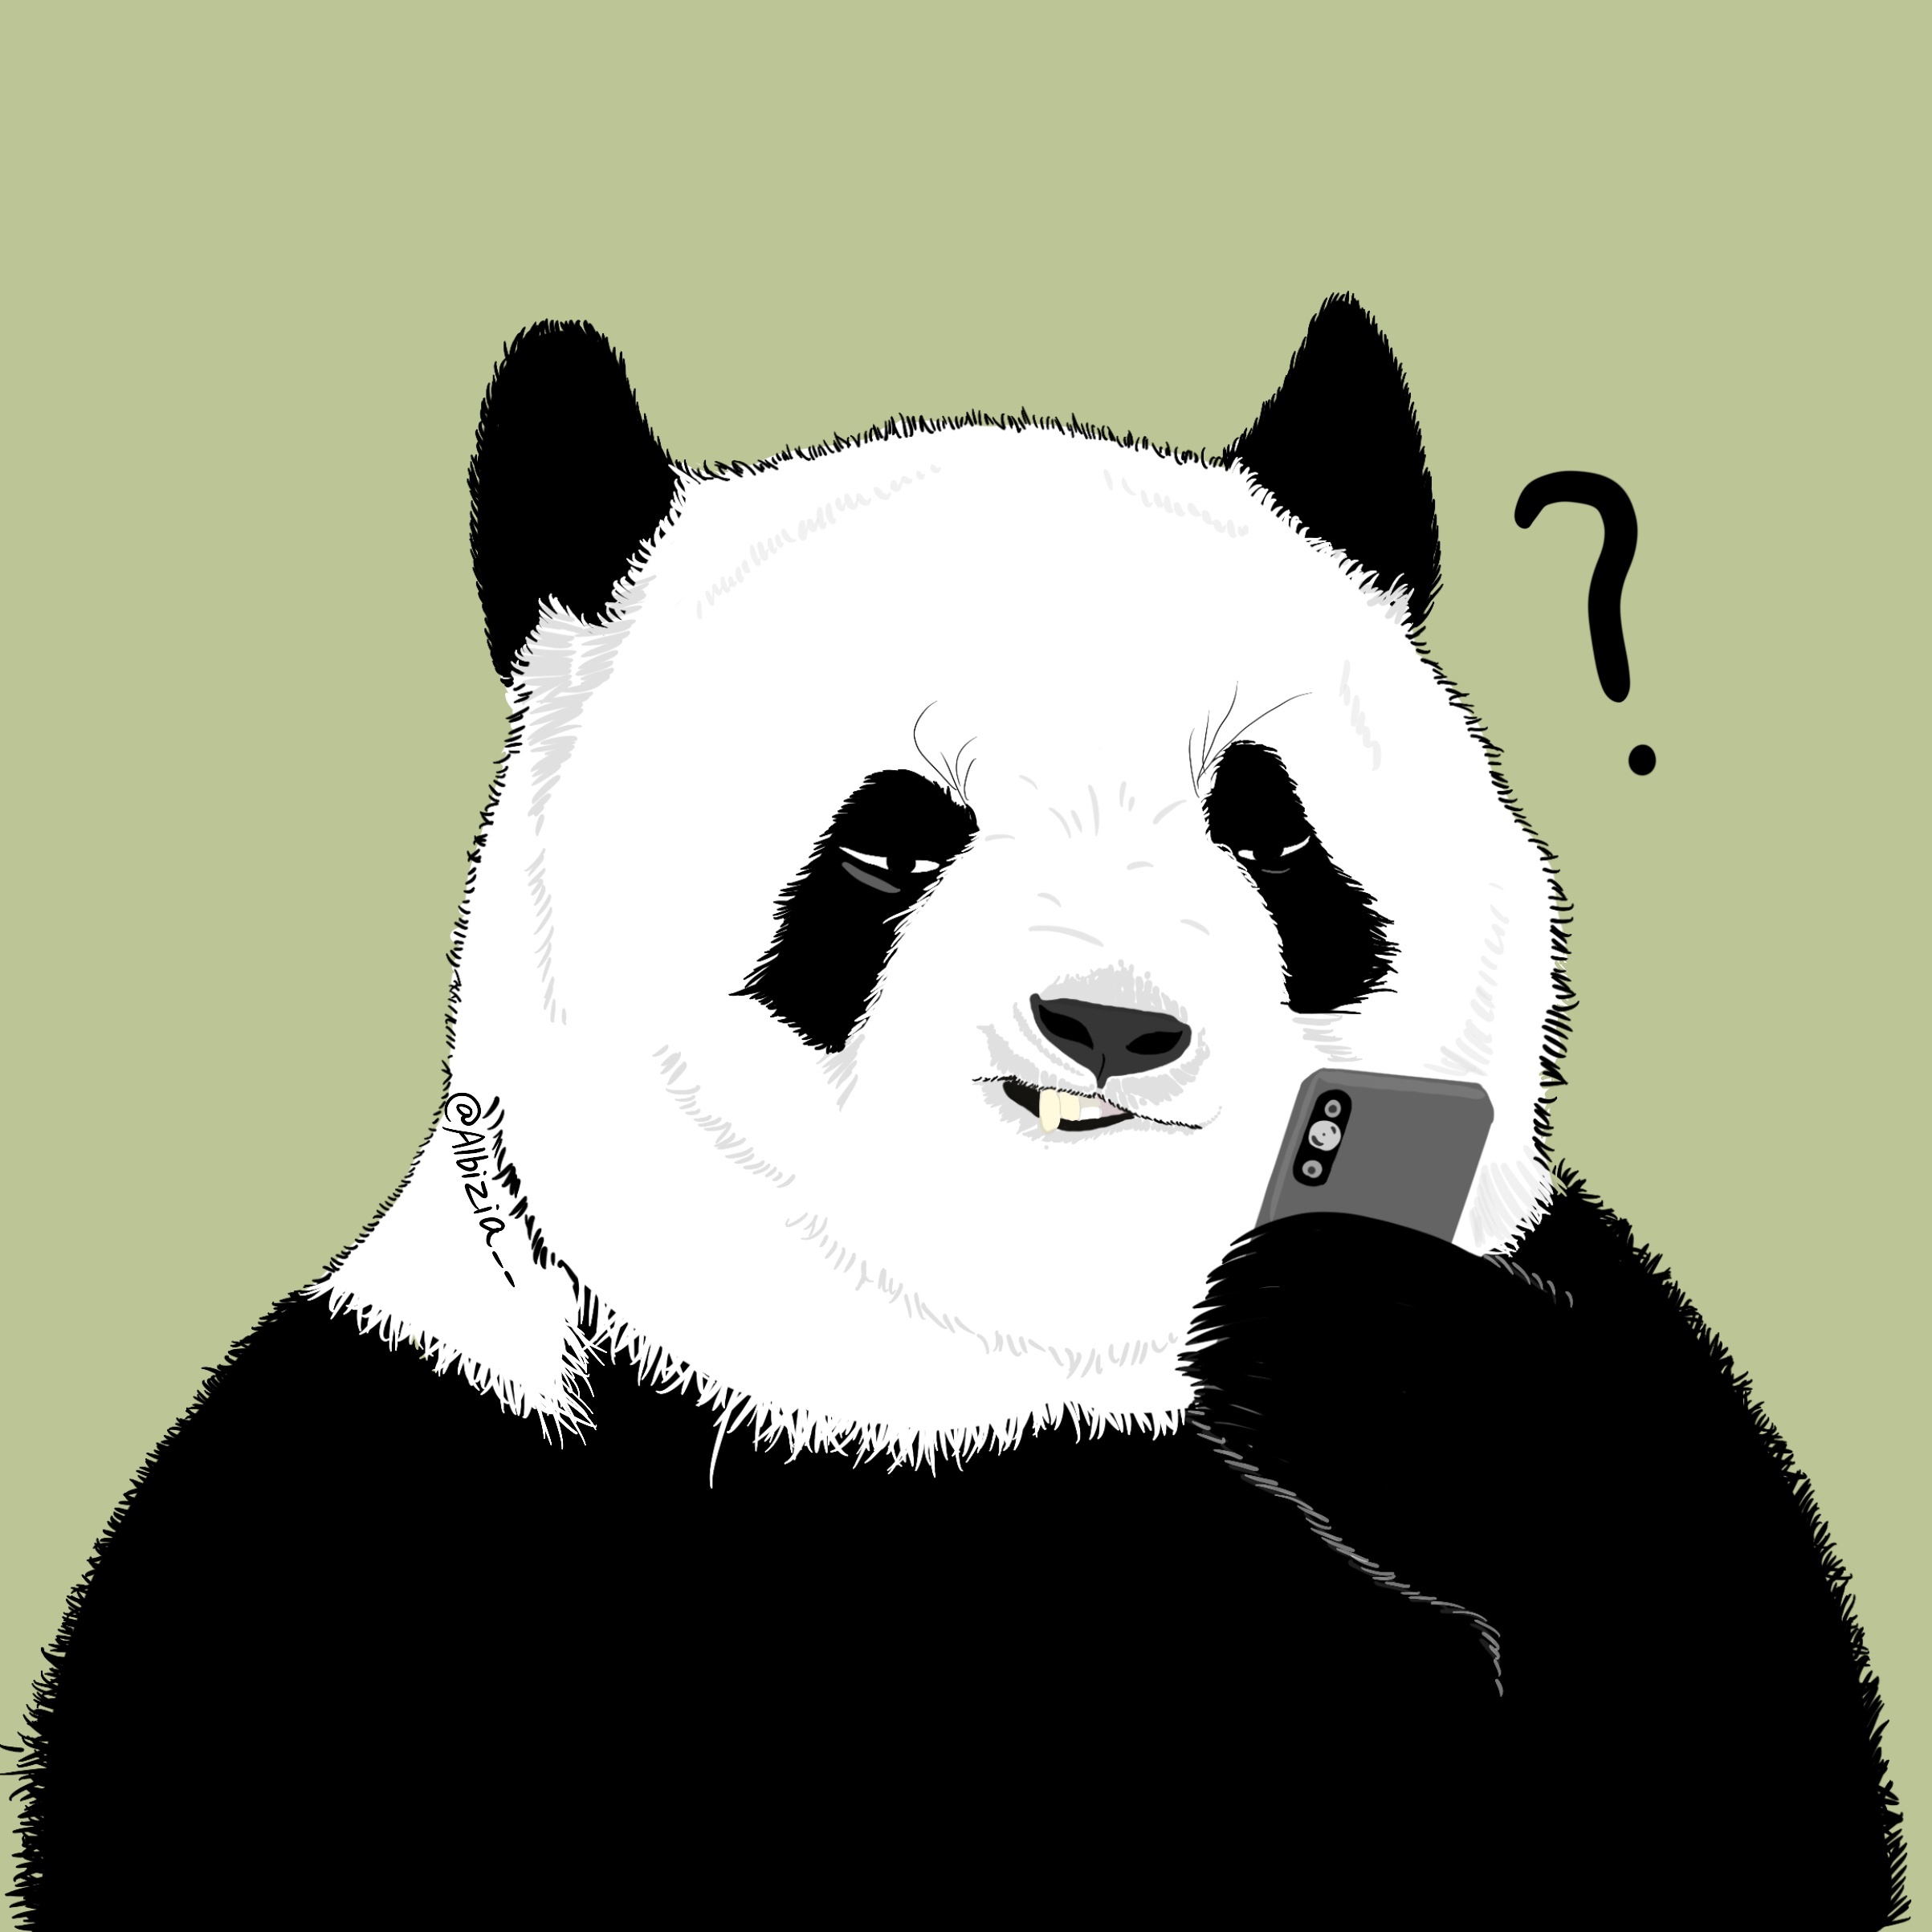 黑色手绘熊猫卡通插画图片素材免费下载_觅知网